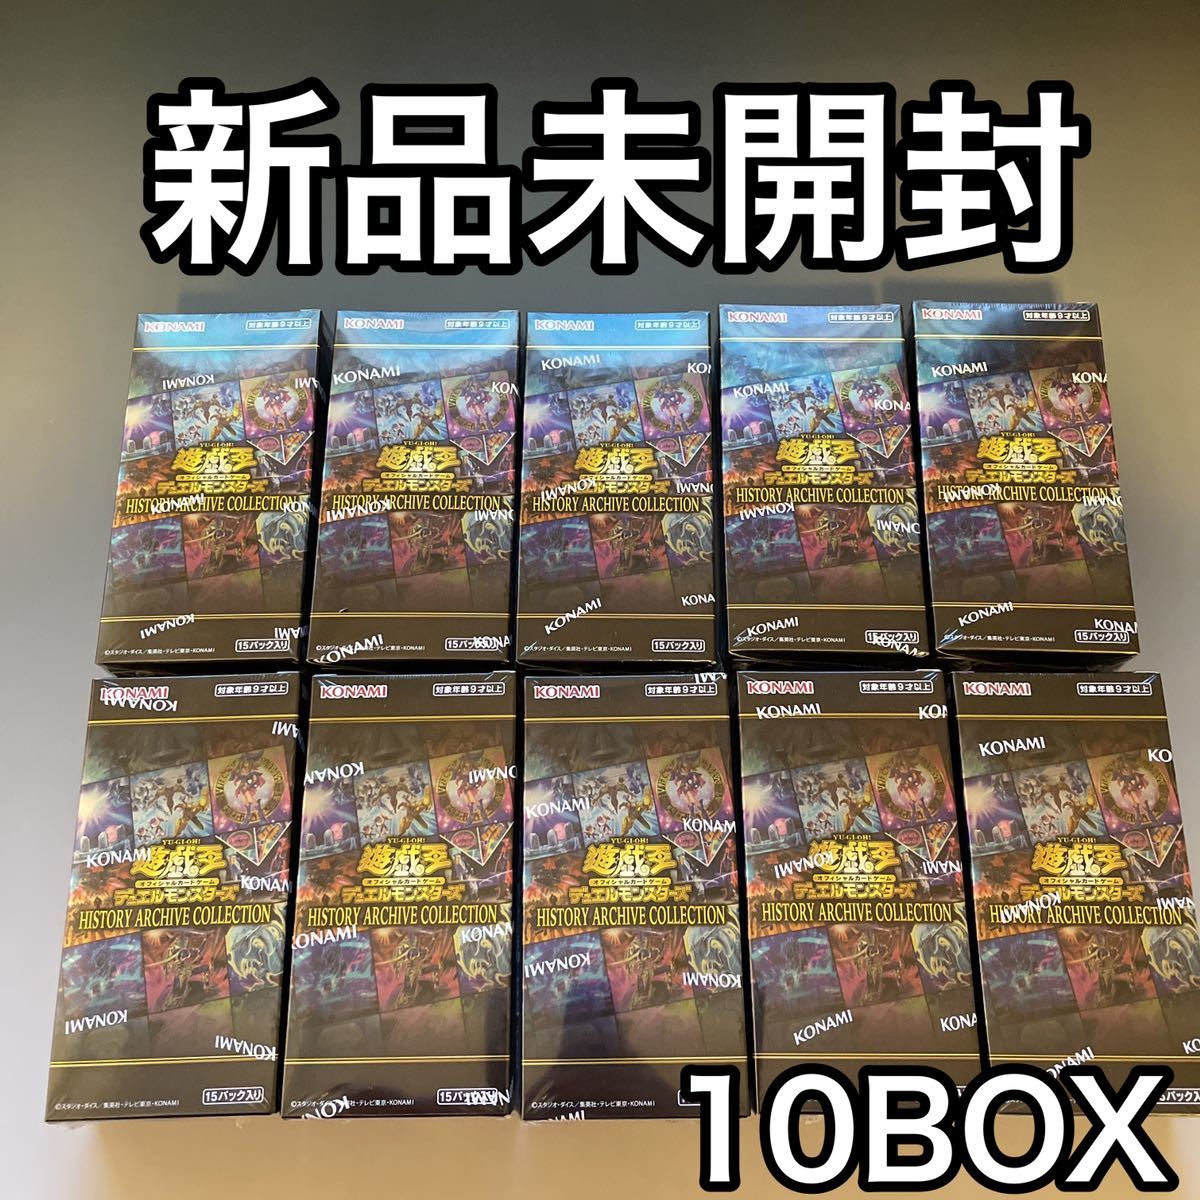 値下げ中 遊戯王 ヒストリーアーカイブコレクション 10BOX 未開封 遊戯王